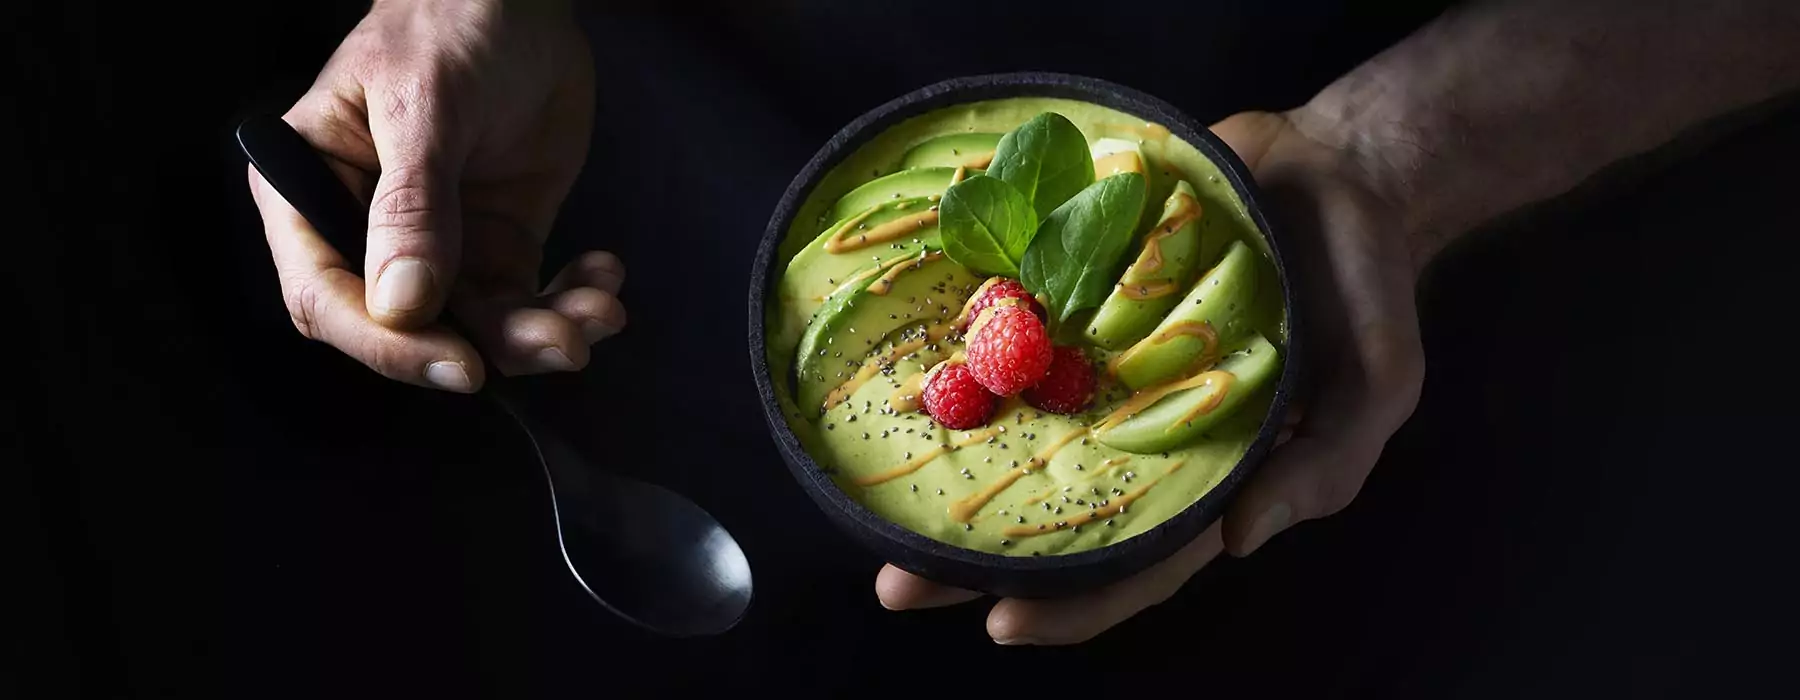 Matcha-avocado smoothiebowl